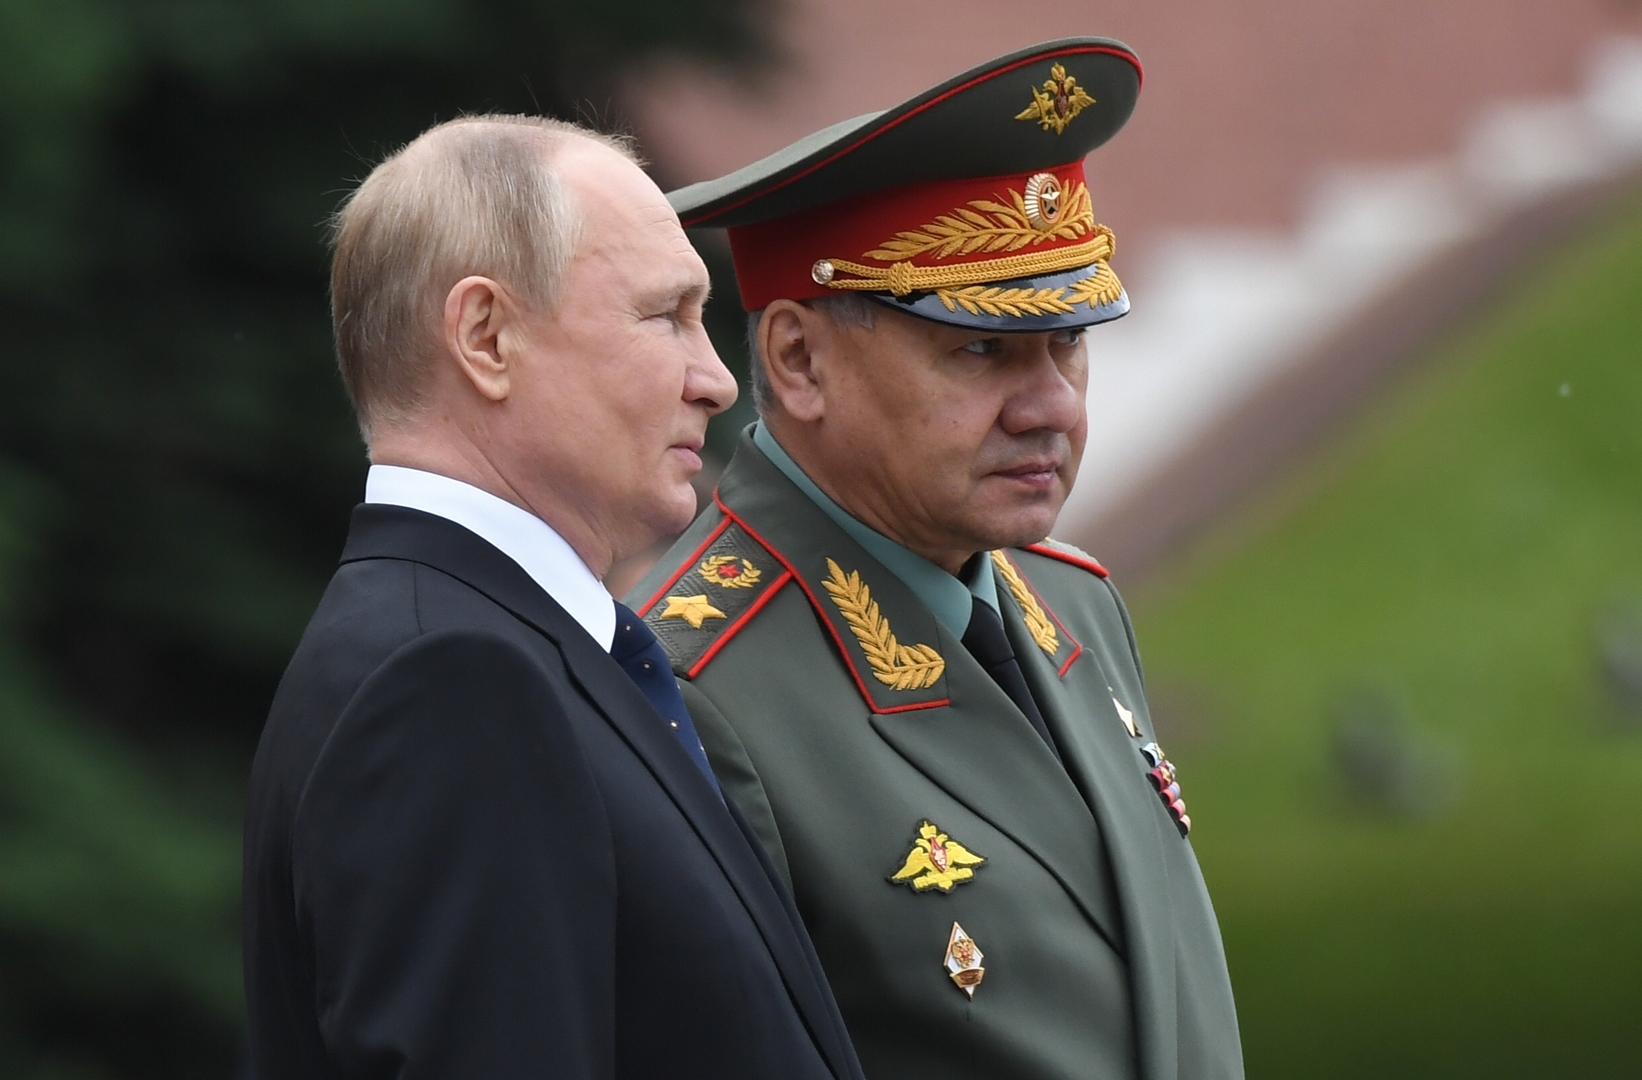 الكرملين: بوتين يتلقى تقارير يومية من شويغو عن العملية الخاصة في أوكرانيا